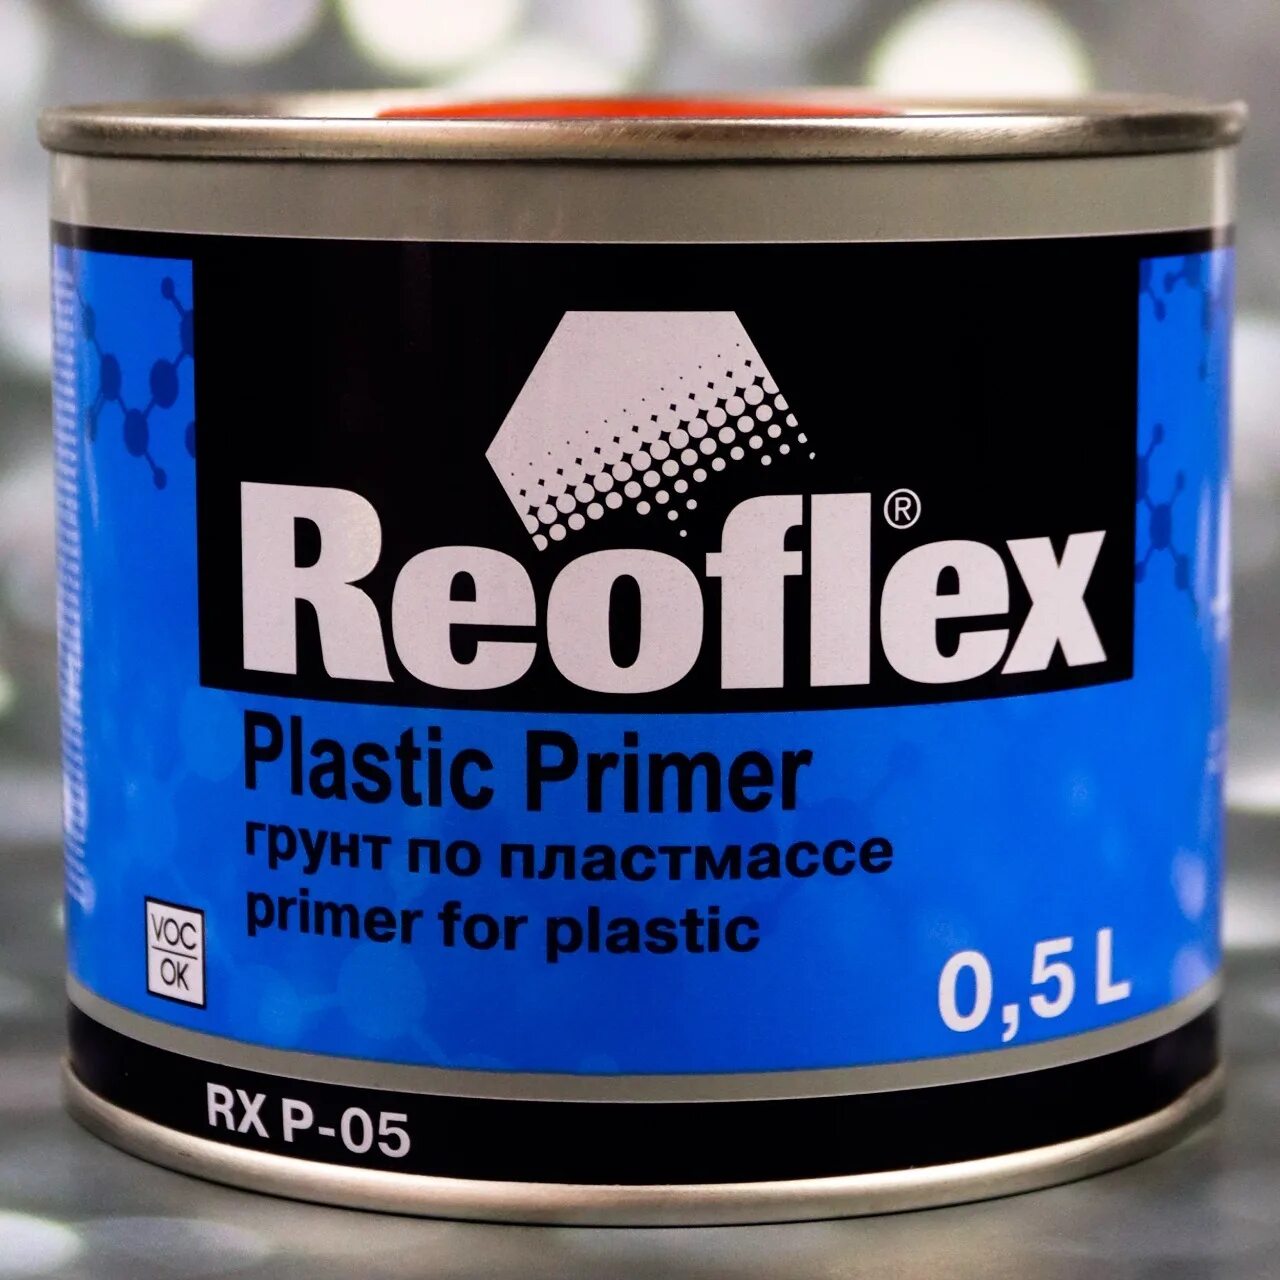 Reoflex Plastic primer. Reoflex грунт по пластмассе. Reoflex RX P-05. Грунт по пластику Reoflex RX P-05 серый.